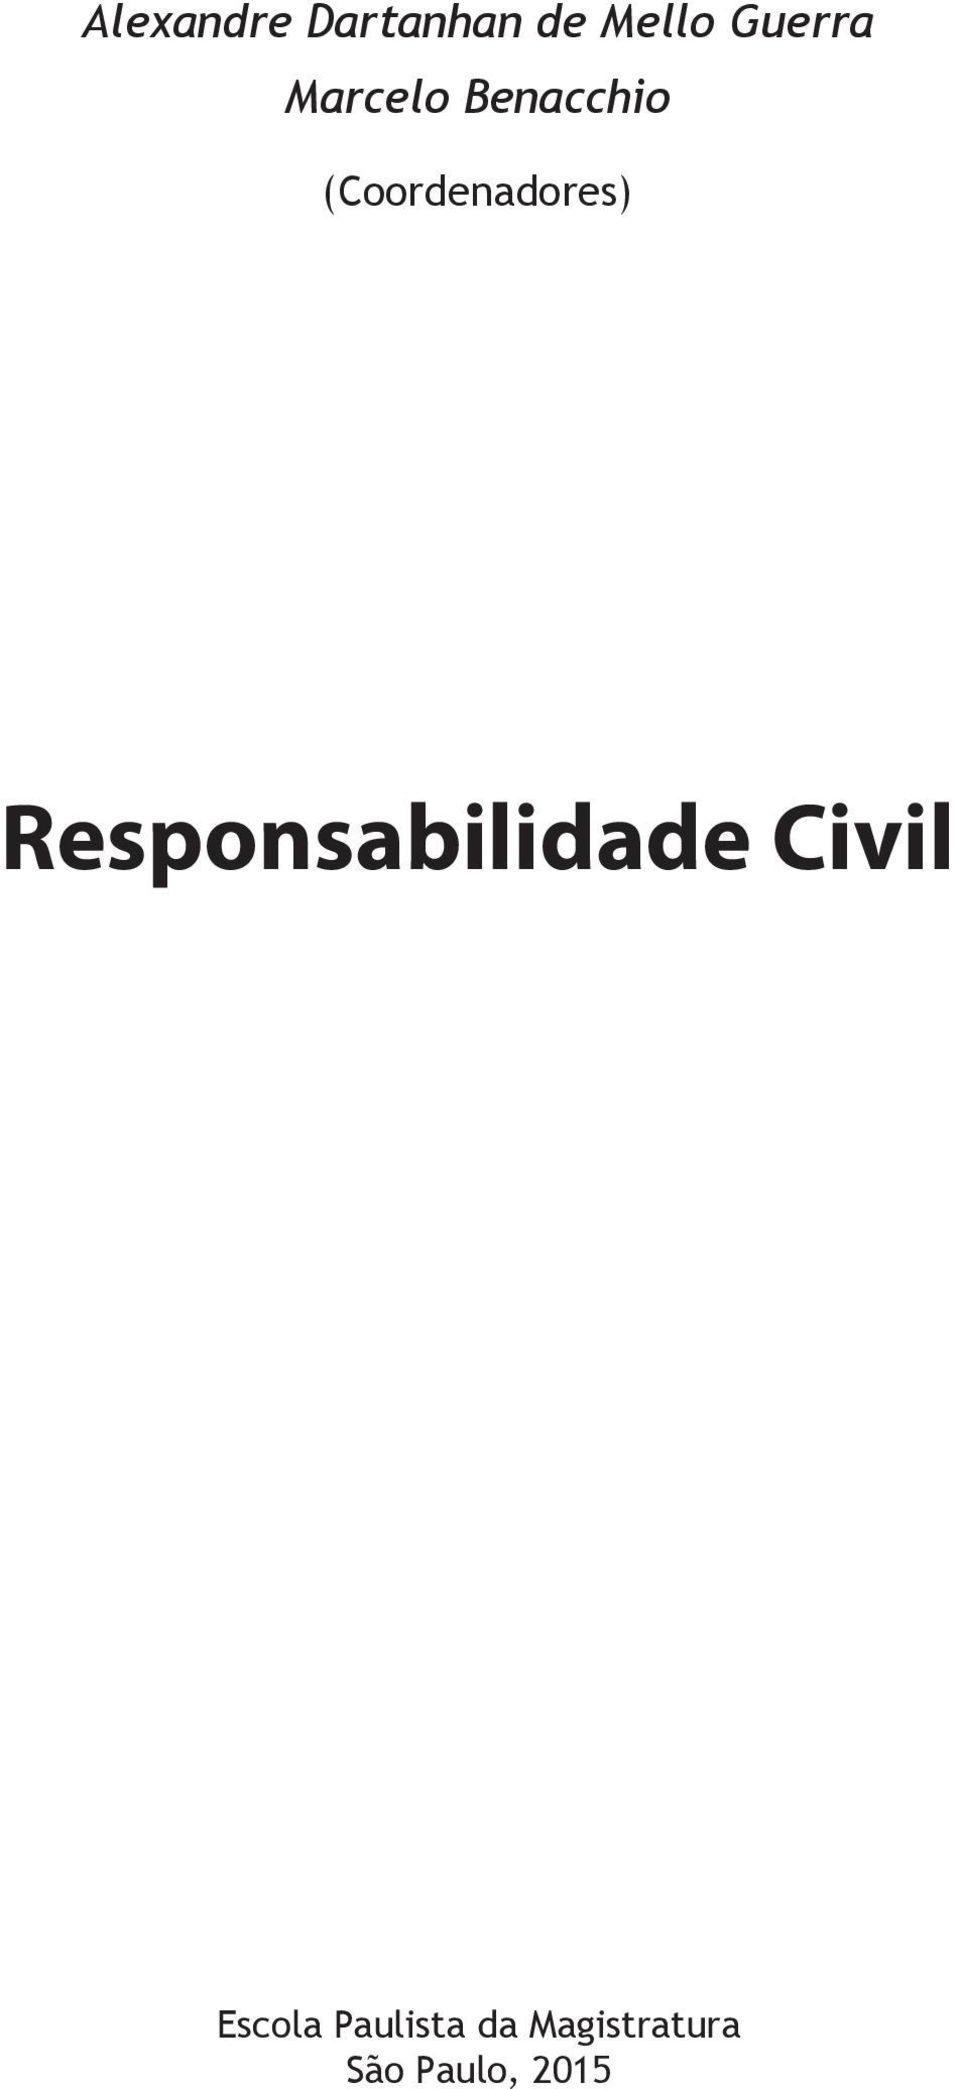 Pós-Doutorado em História (Coordenadores) do Direito pela Faculdade de Direito da Universidade de Lisboa em Portugal (FDUL).